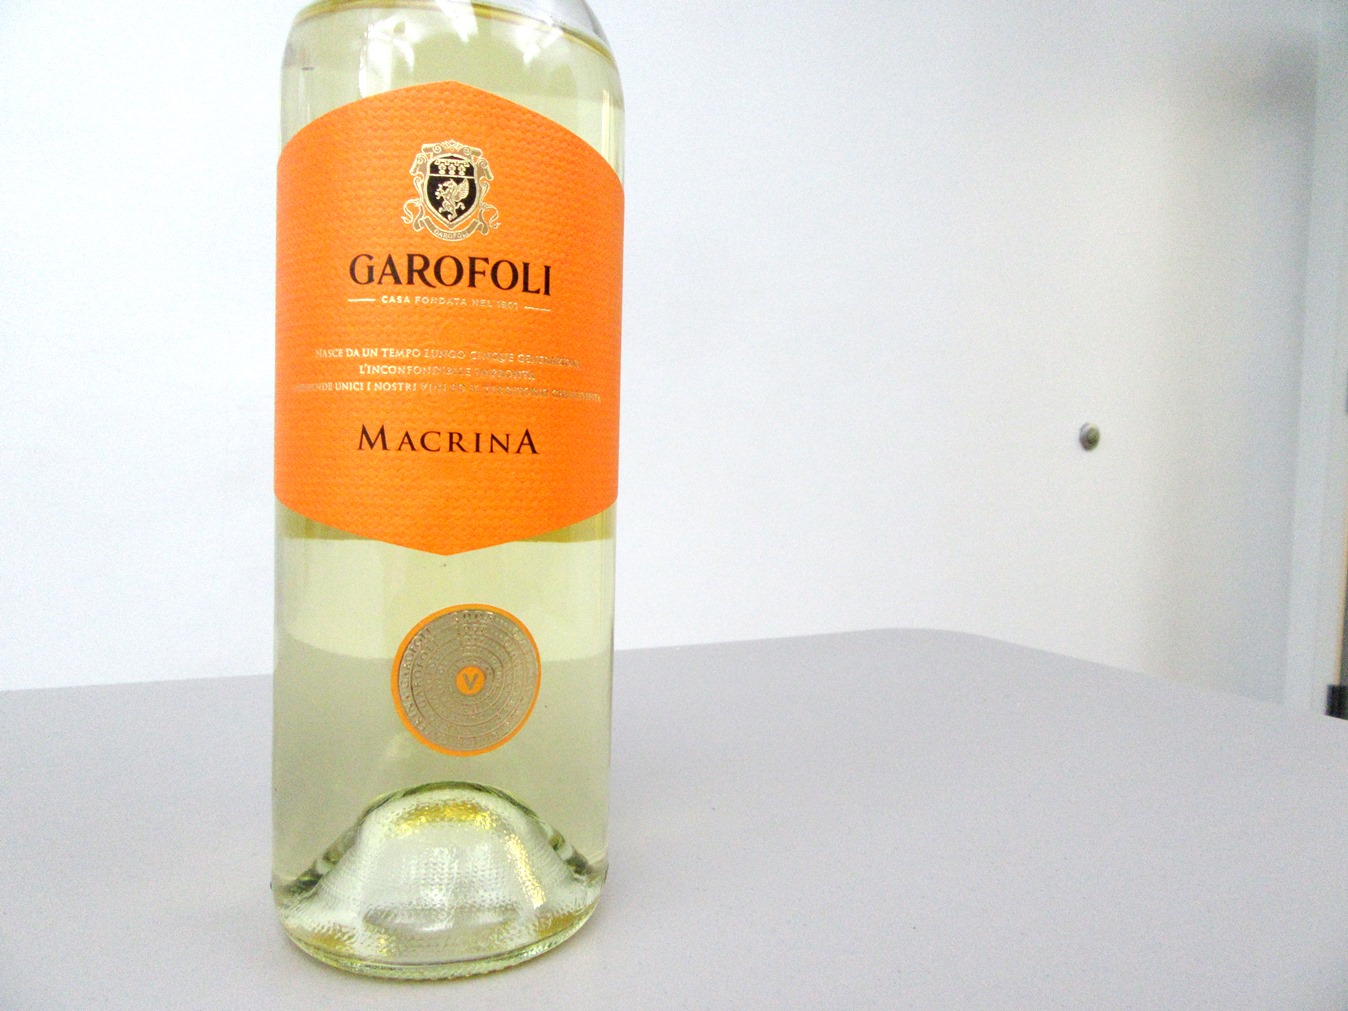 Macrina, Garofoli Verdicchio dei Castelli Di Jesi DOC Classico Superiore 2015, Marche, Italy, Wine Casual